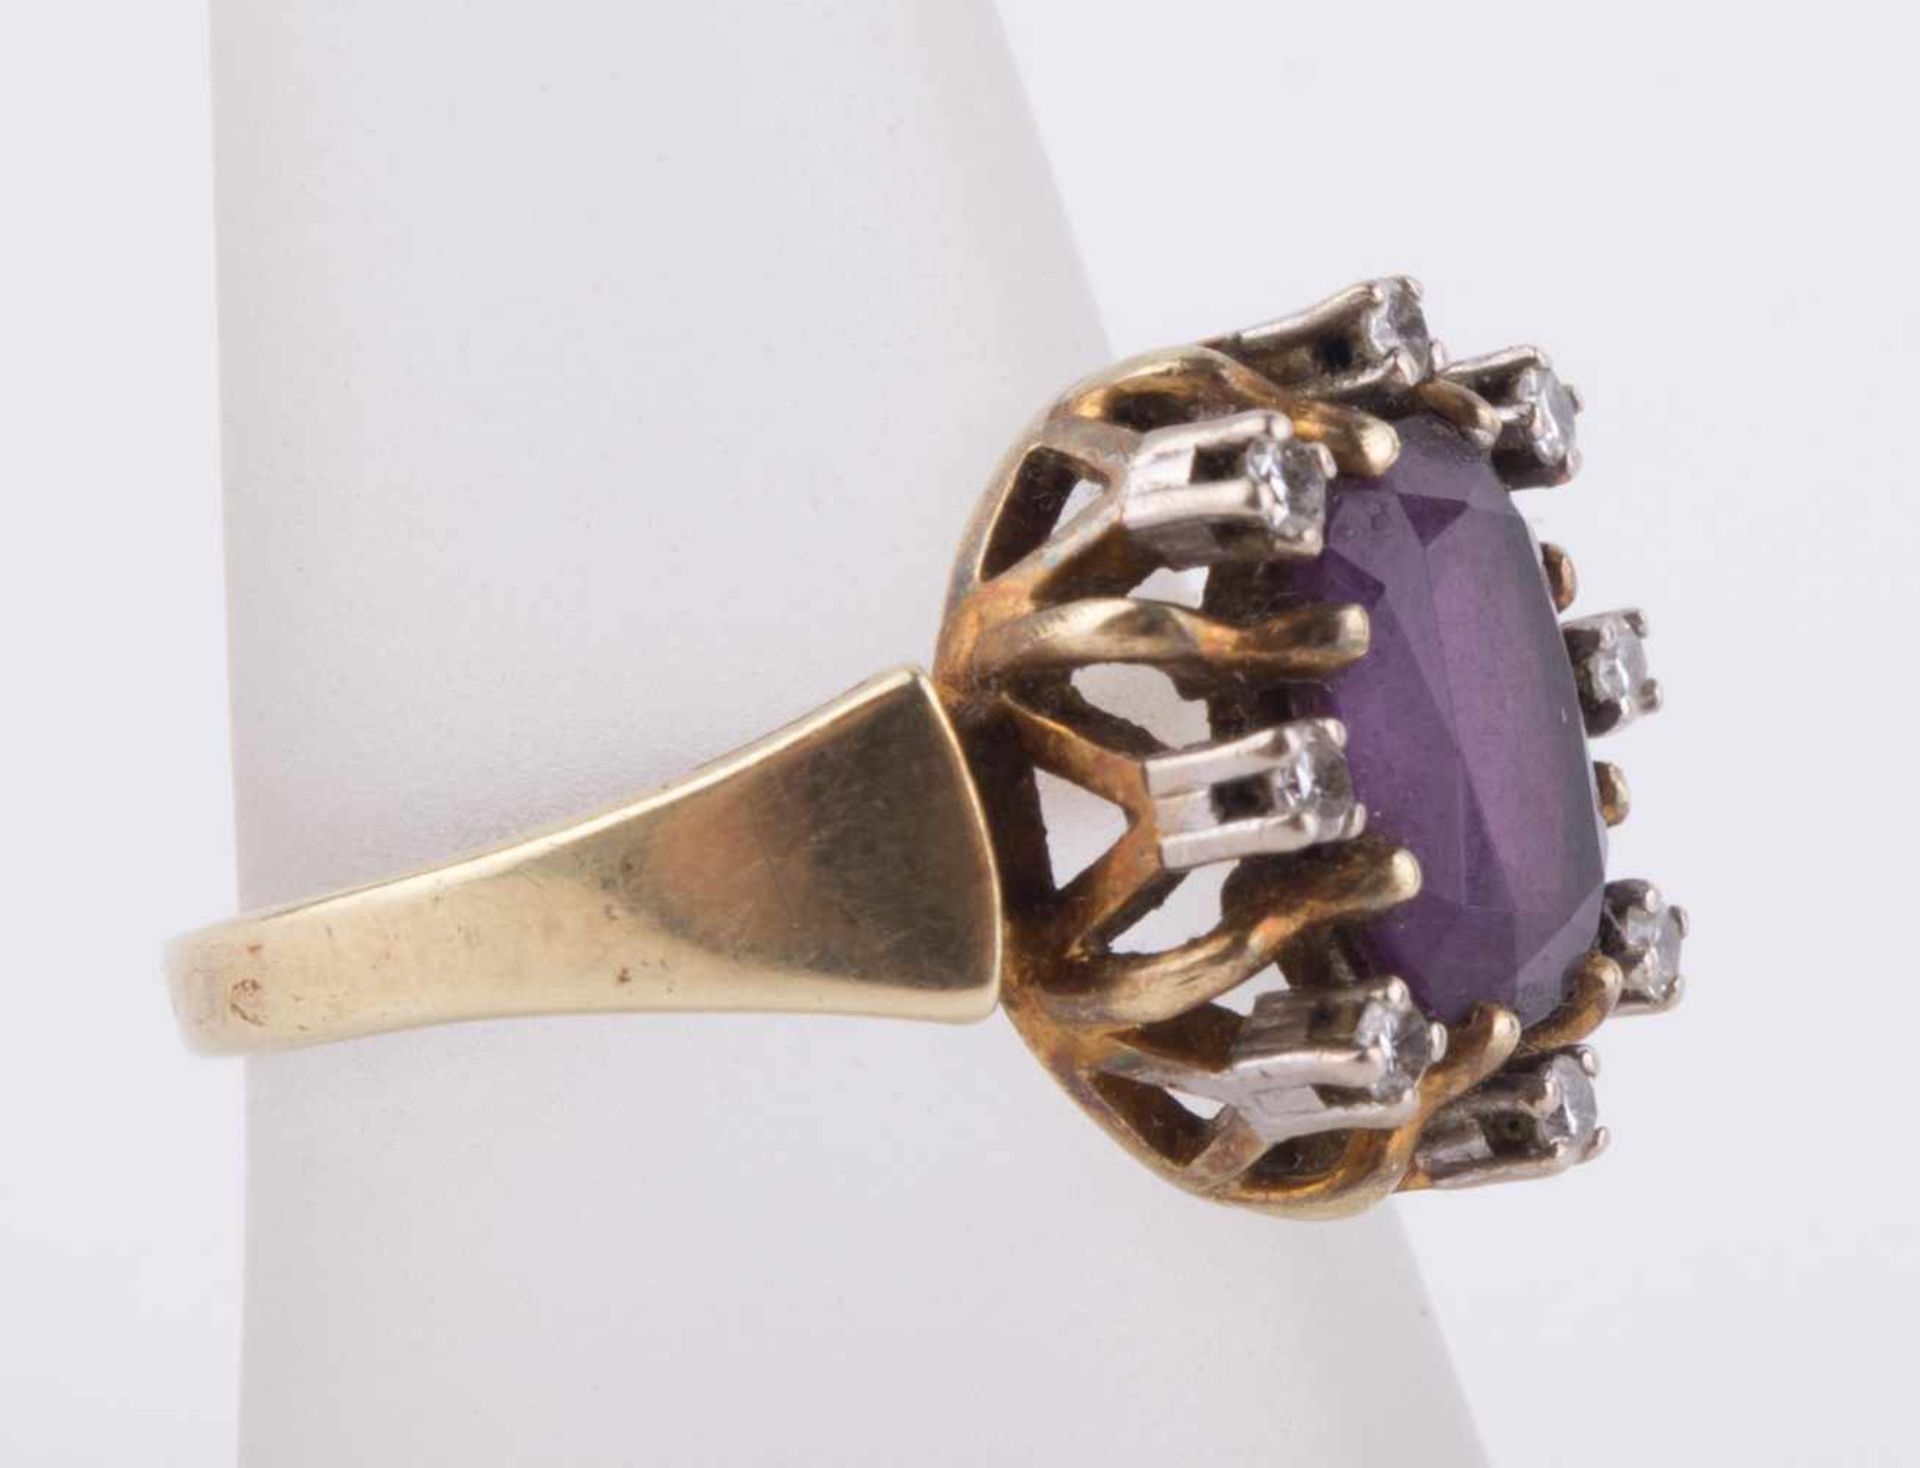 Damen Amethyst-Diamantring / Women's amethyst-diamond gold ring GG 585/000, RG ca. 58, 8 kleine - Bild 3 aus 10